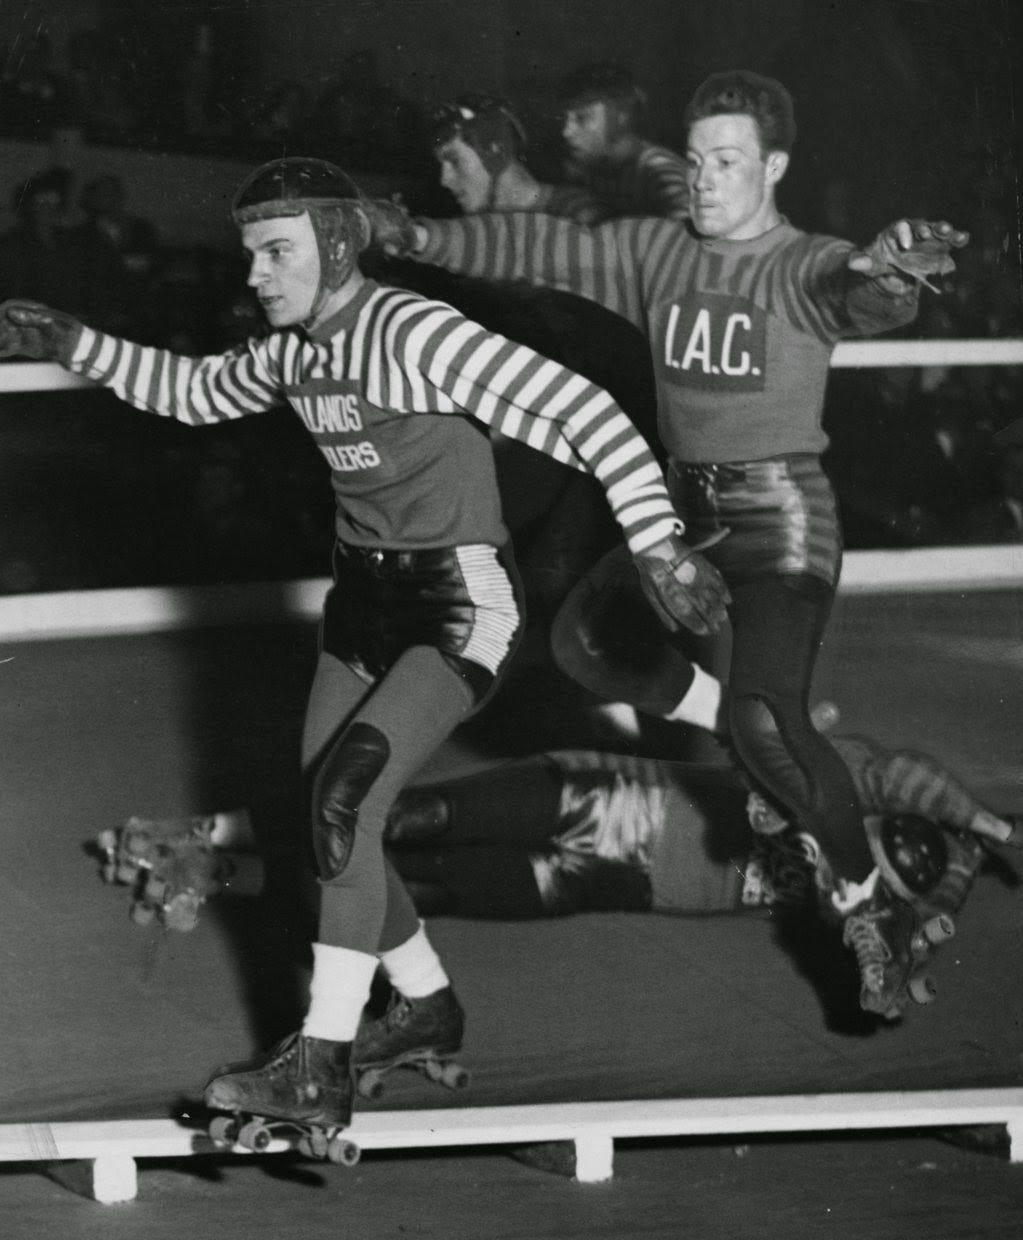 Two men roller derby skating. 1940.